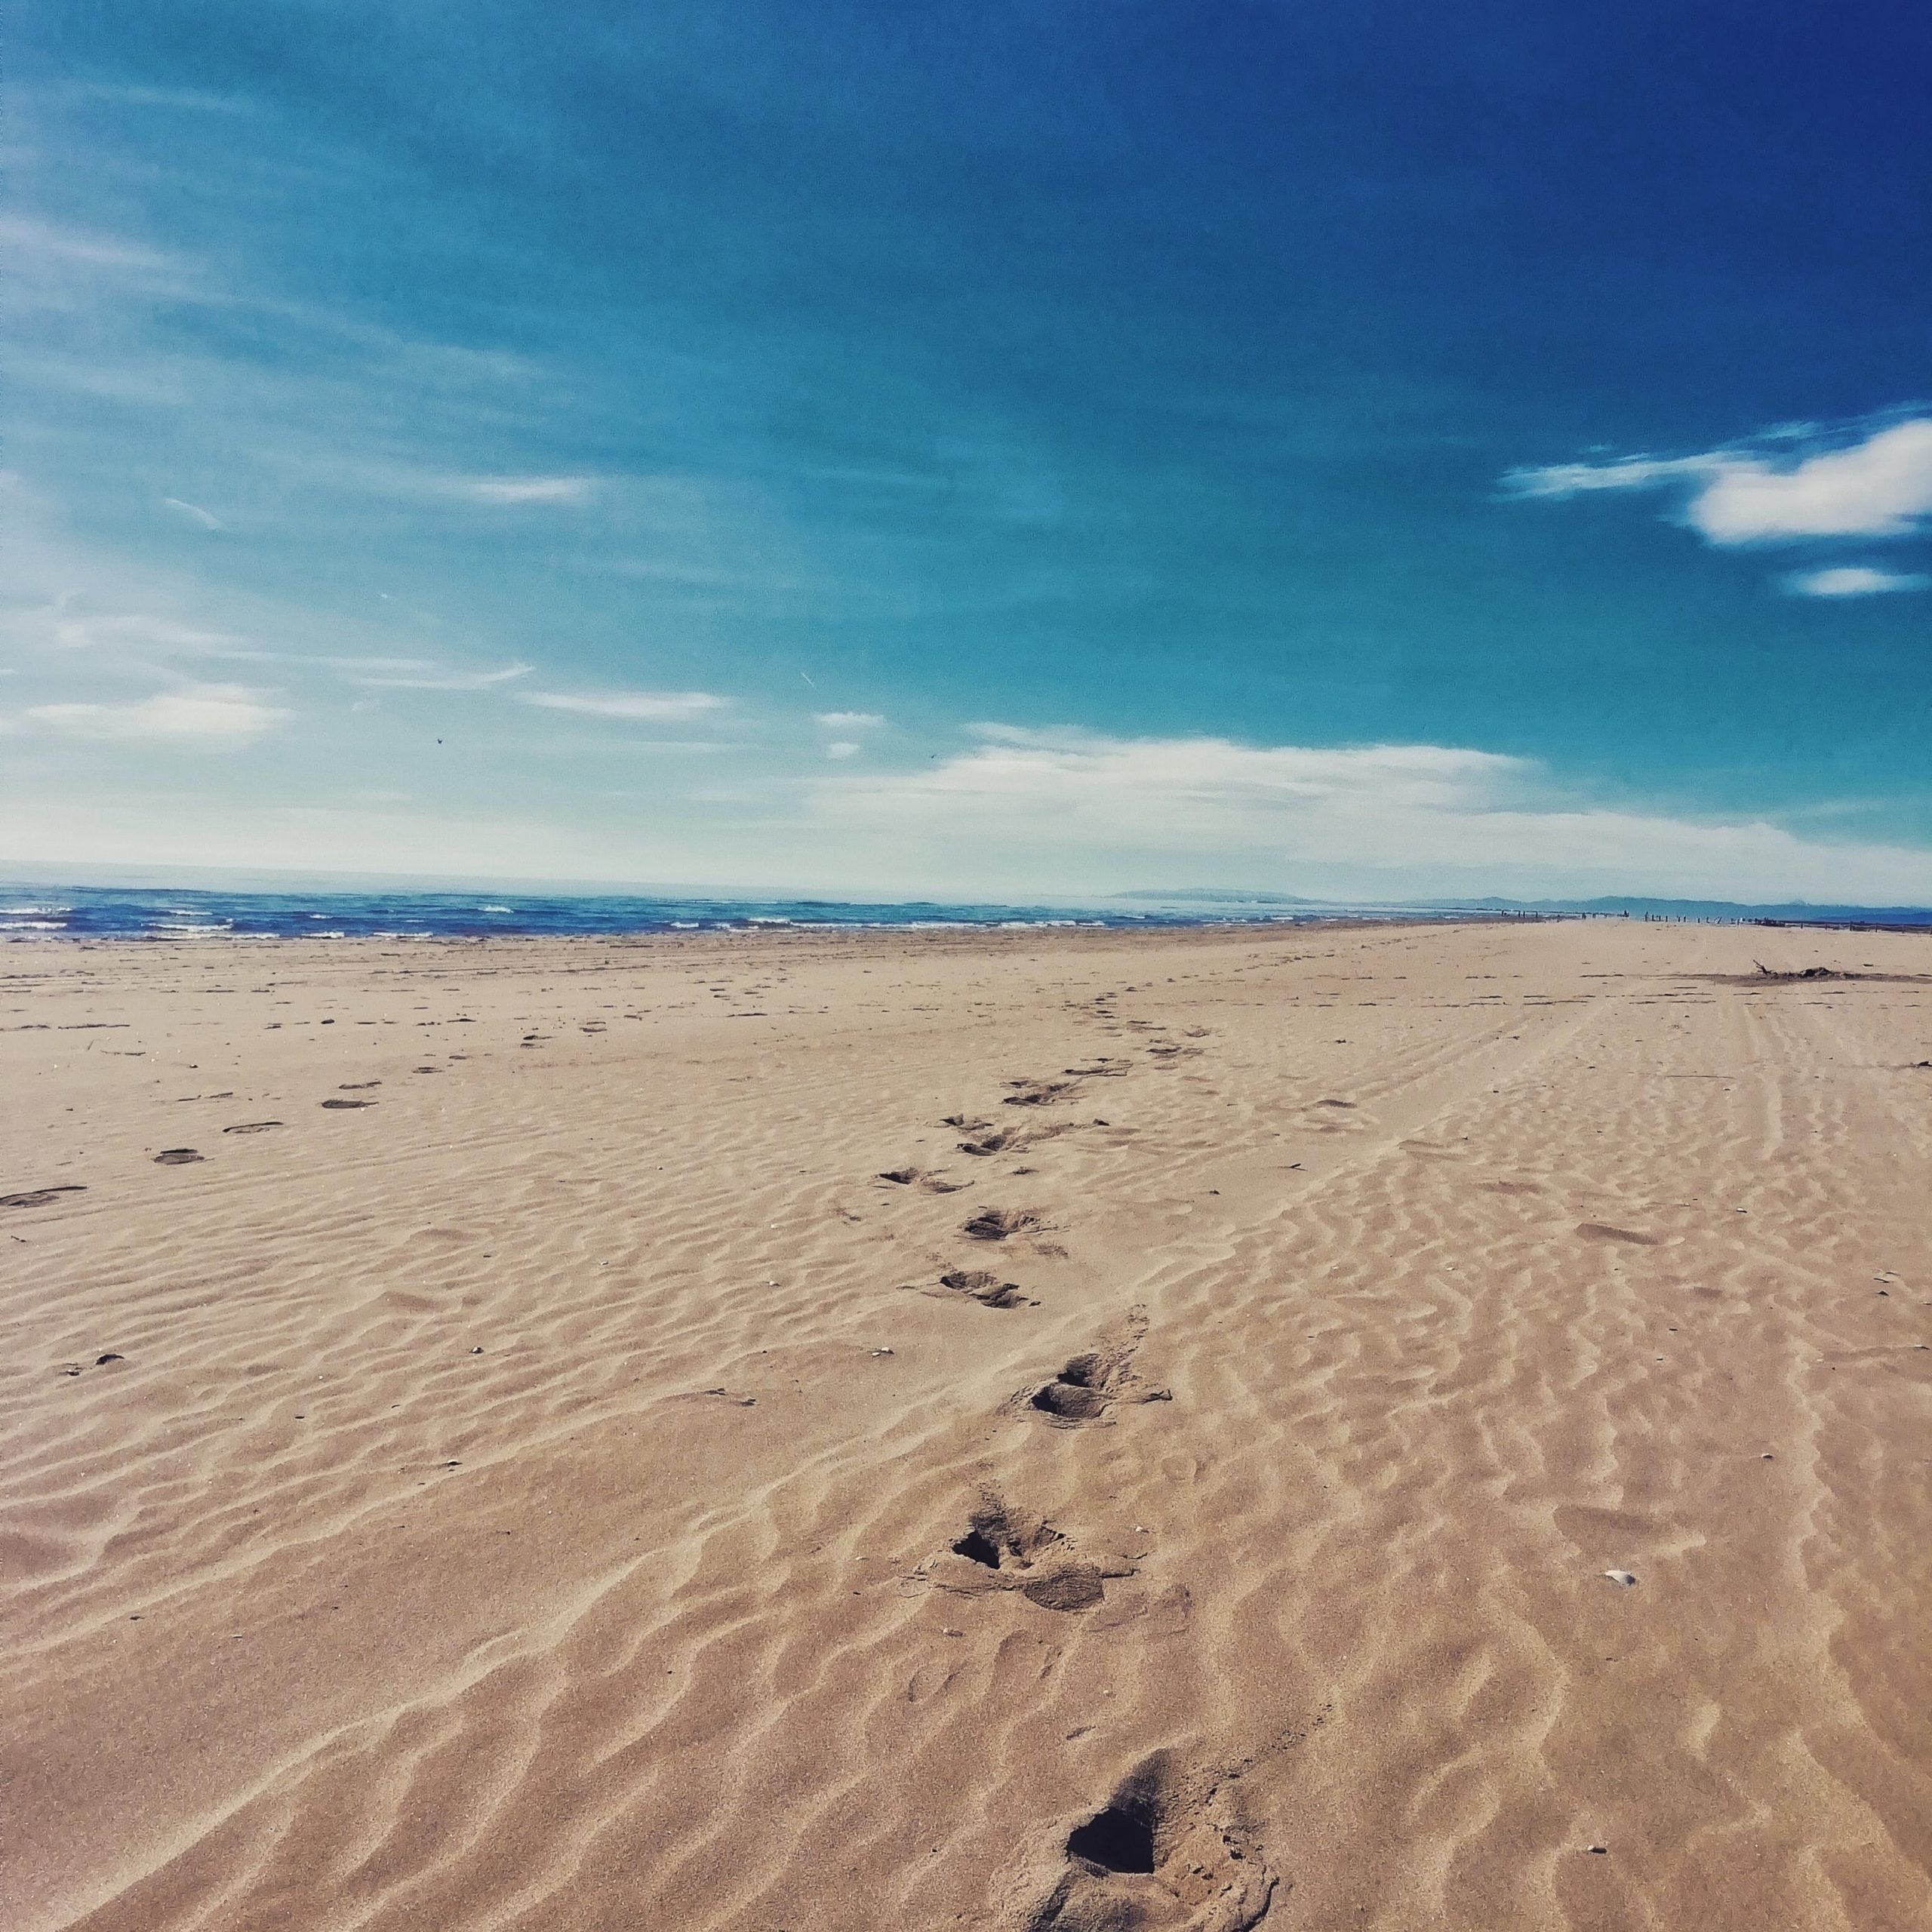 Platges verges d’arena fina i poca profunitat als Eucaliptus. Casi 6 quilòmetres de llarg i 200 metres d’ample. La perfecta combinació entre arrosars i eucaliptus